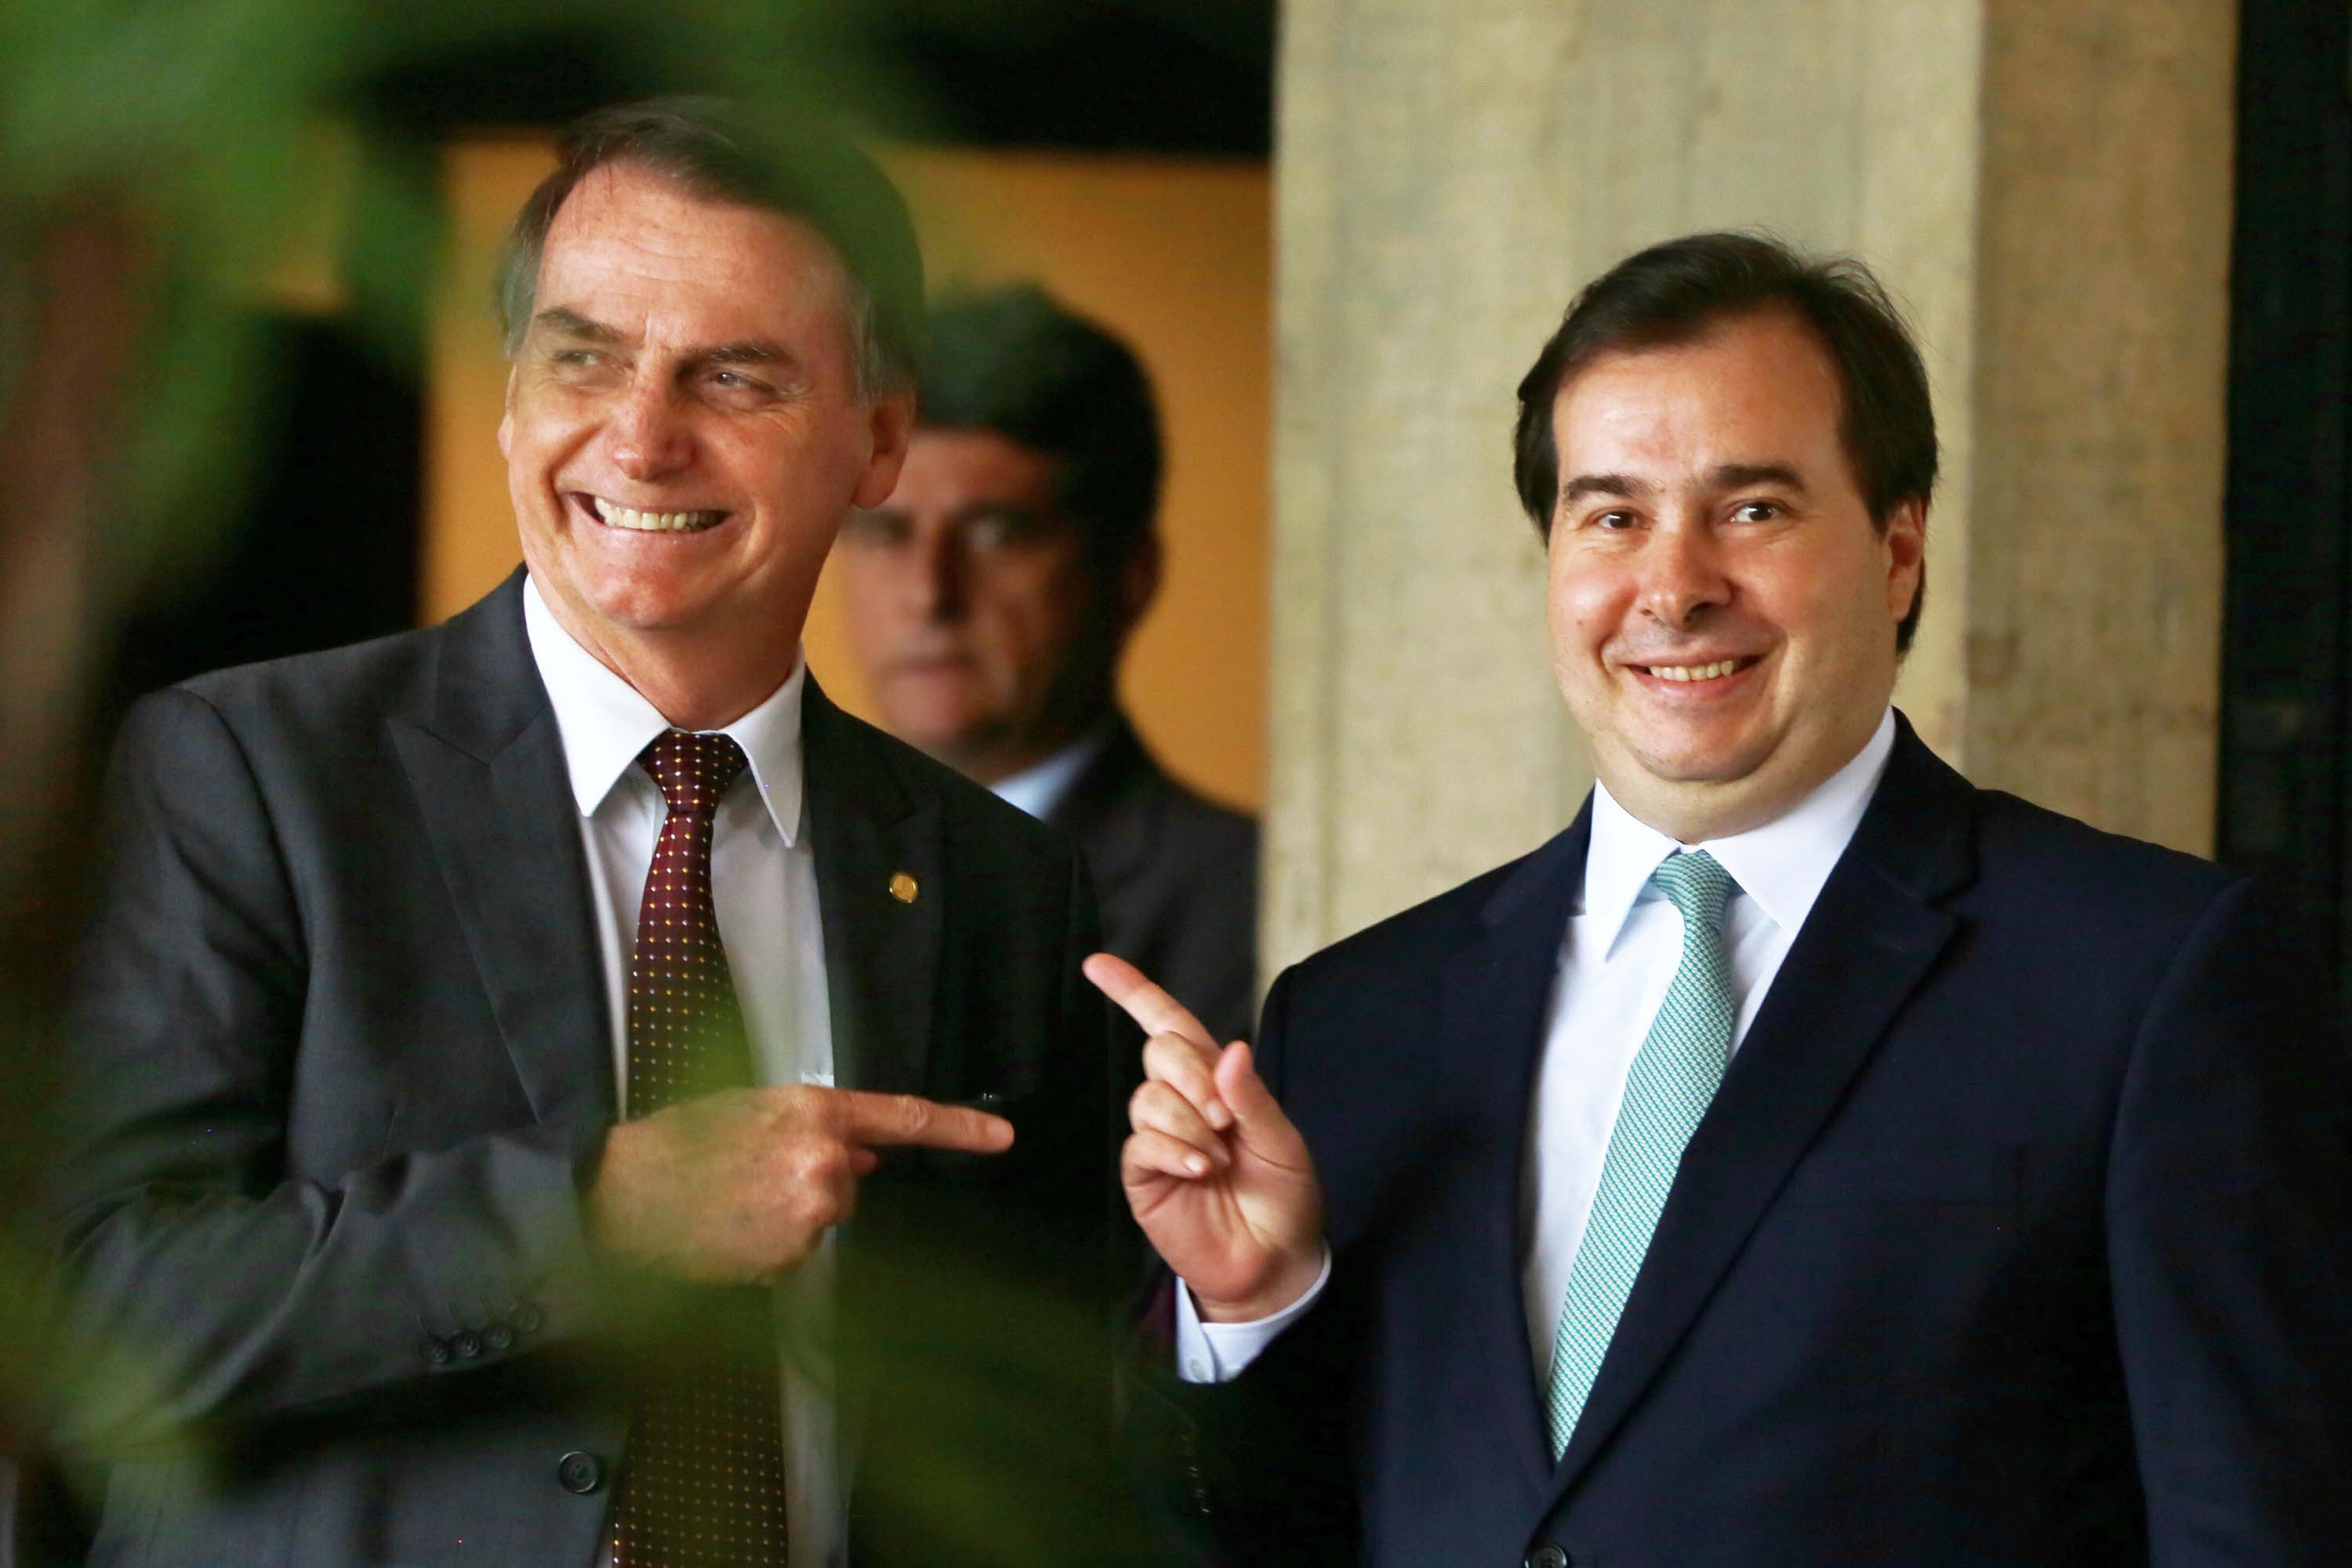 Contra Bolsonaro, centrão quer resgatar reforma da Previdência de Temer